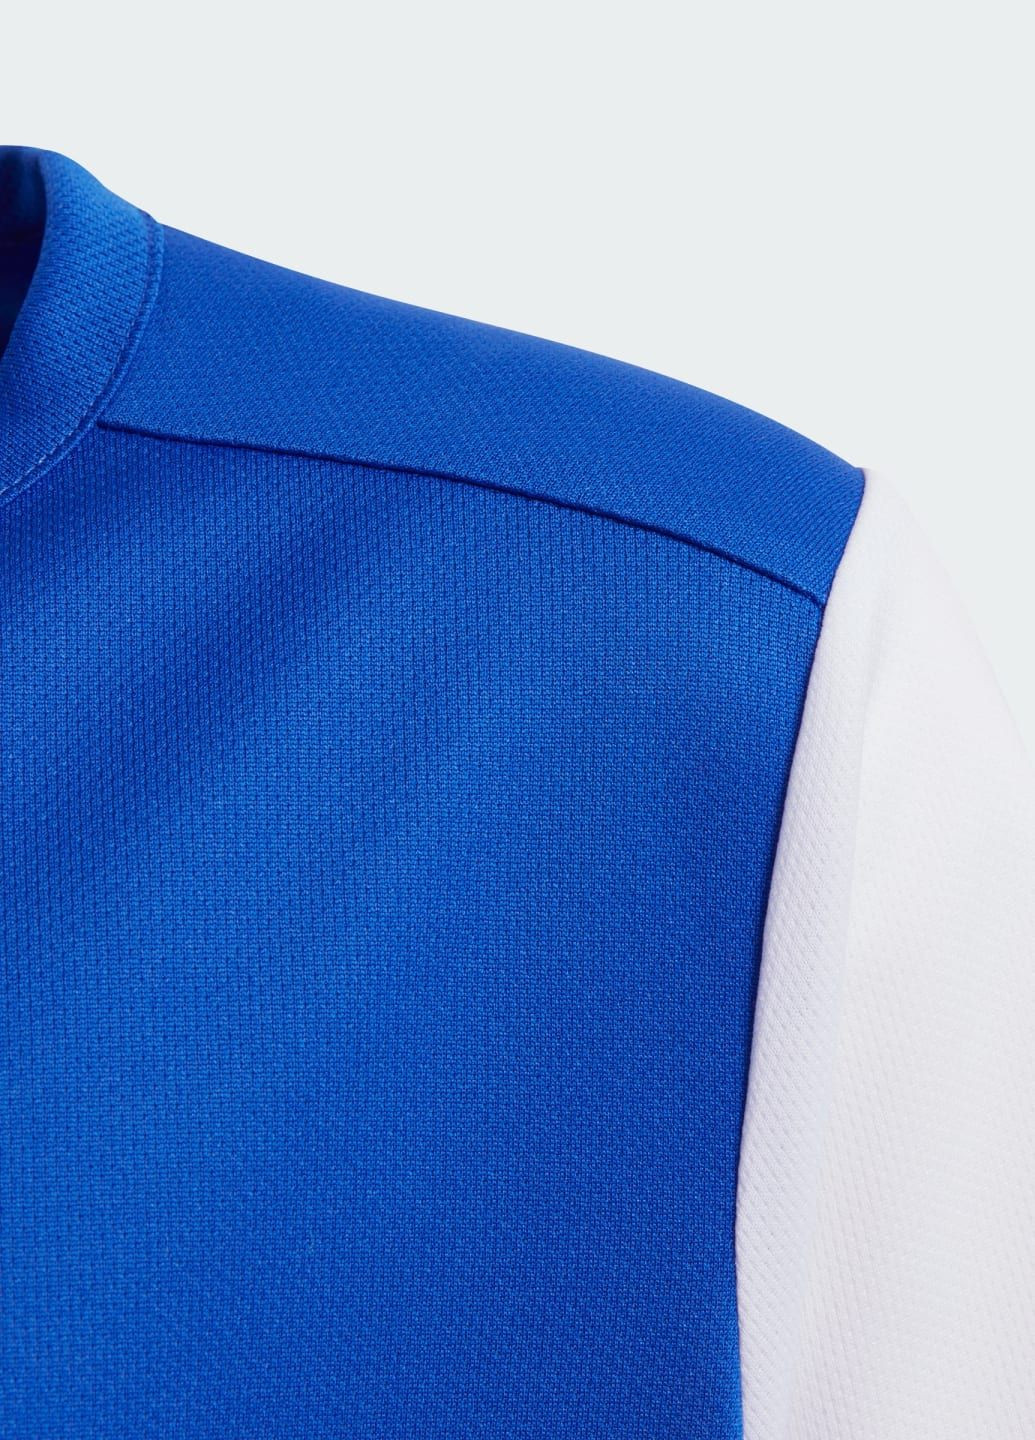 Синий демисезонный спортивный лонгслив adidas с логотипом